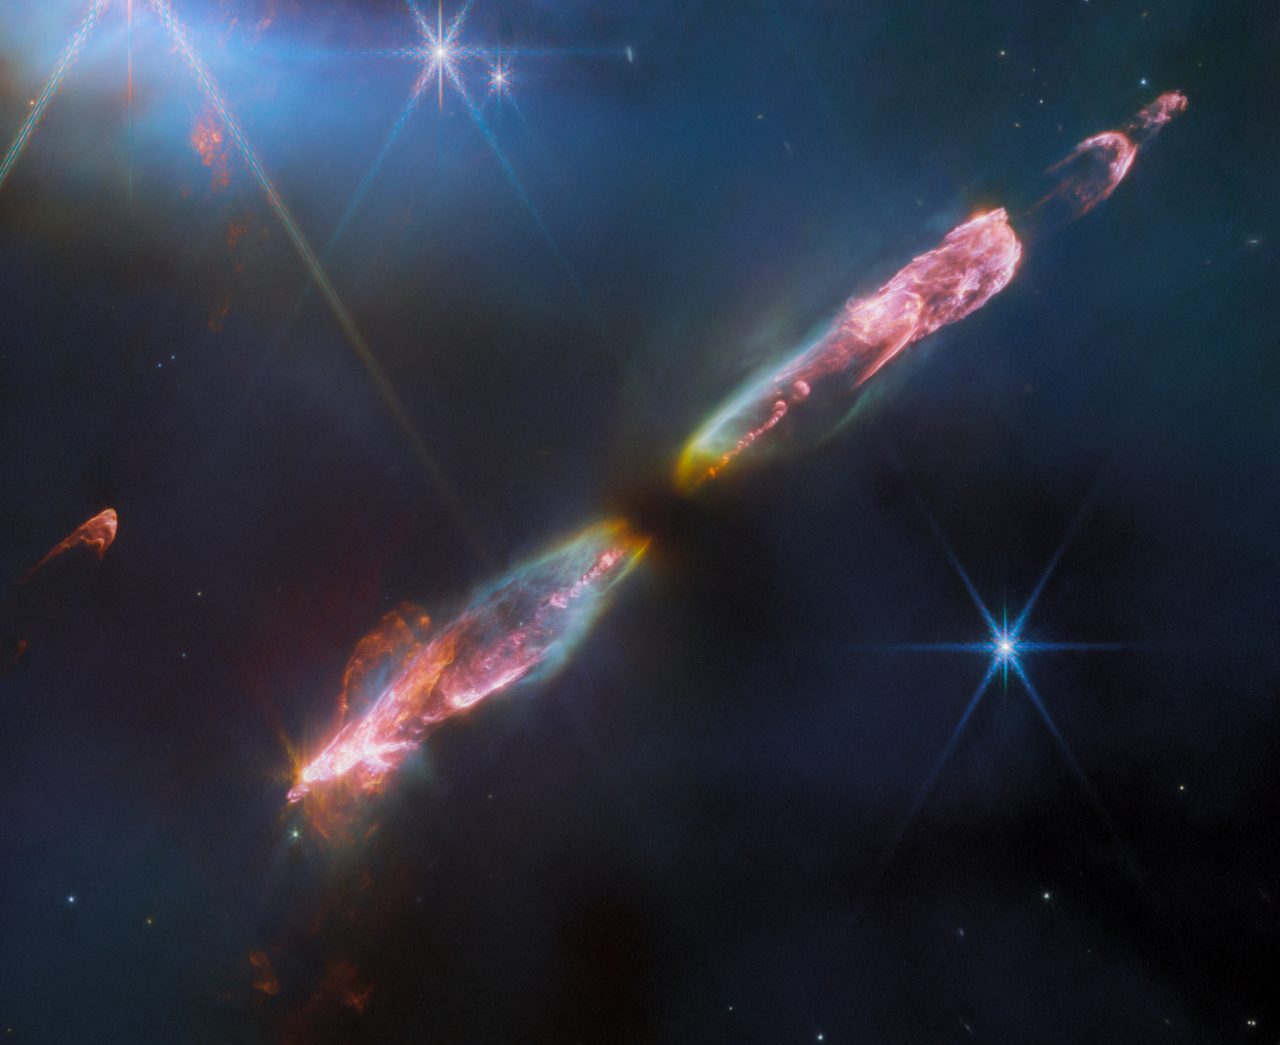 若き原始星の産声 ウェッブ宇宙望遠鏡が観測したハービッグ・ハロー天体「HH 211」